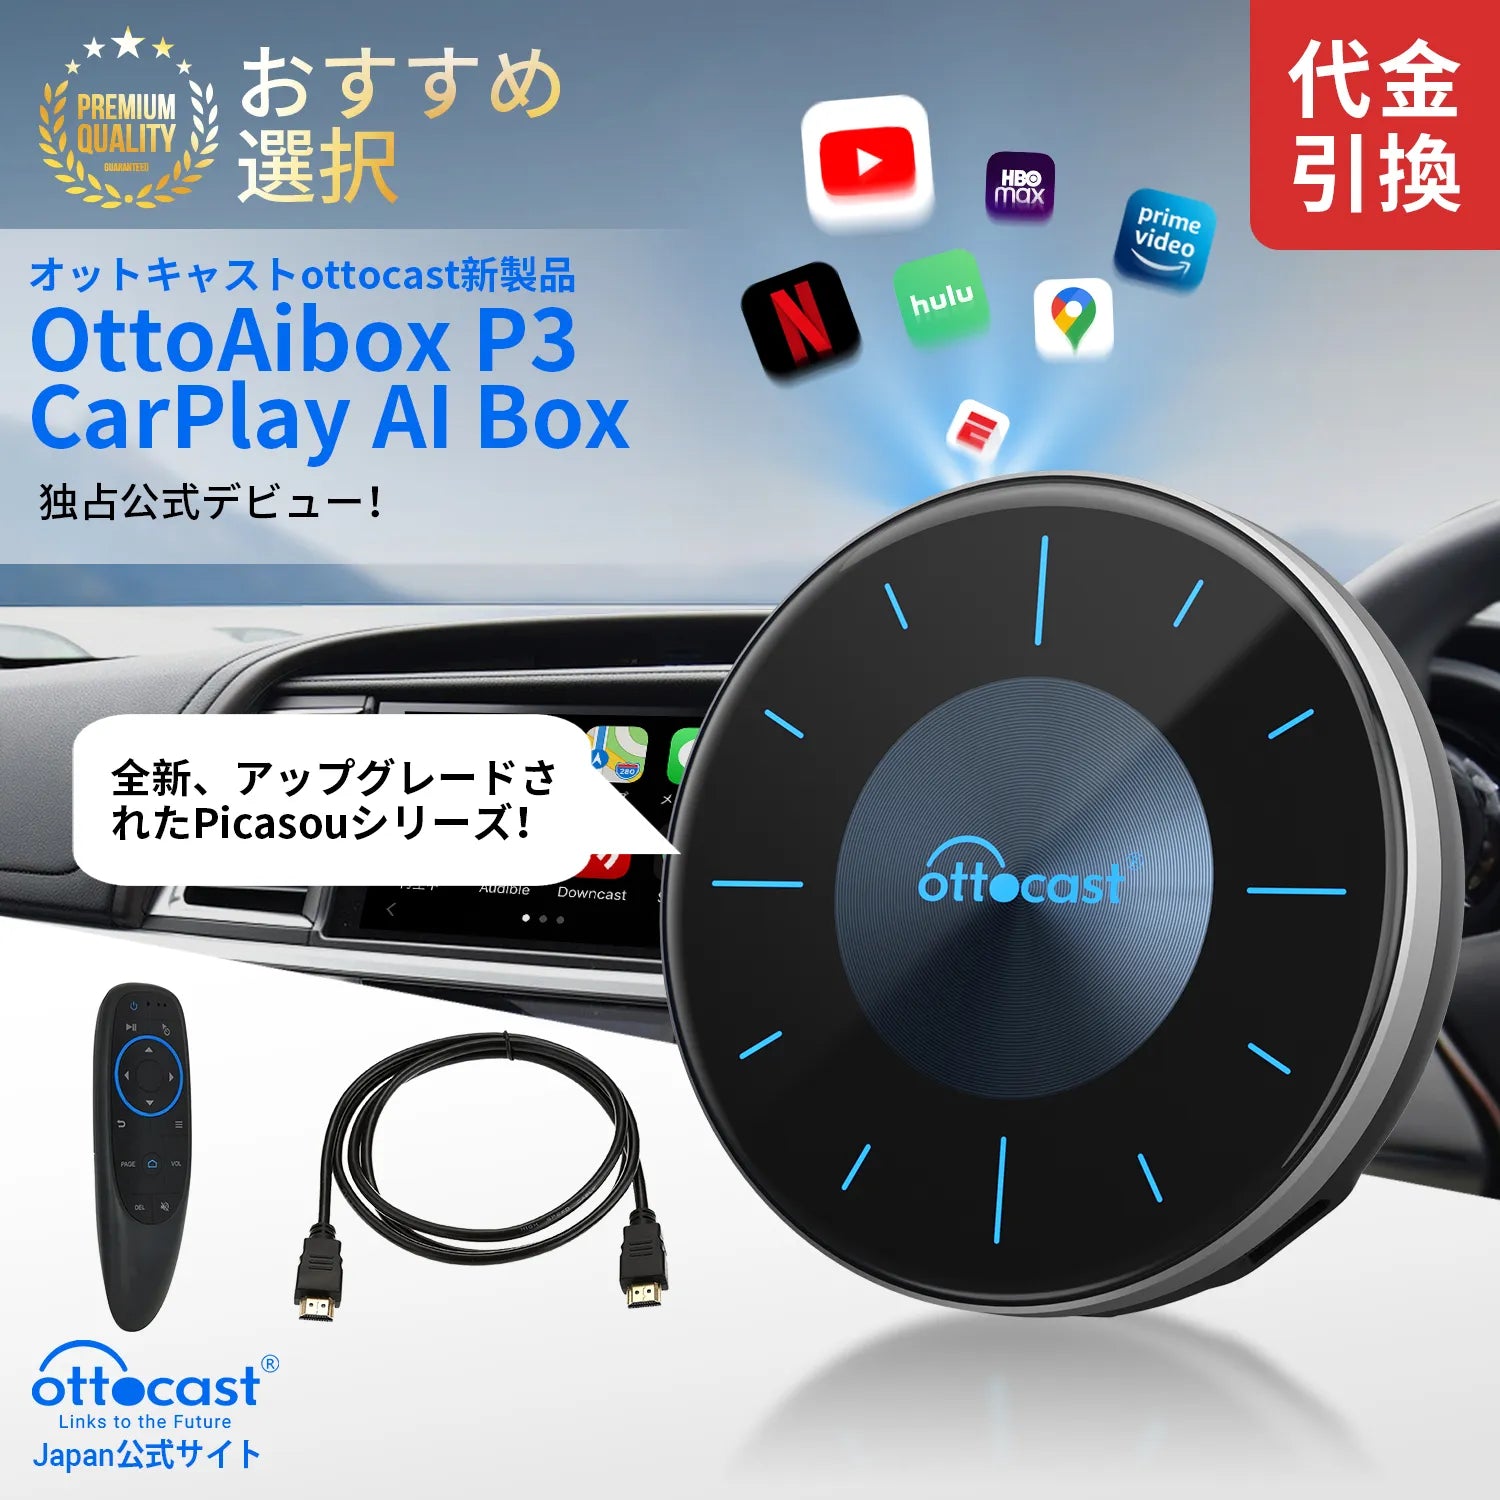 38000円即決しますOttocast ottoAibox  P3  オットキャストpicasou3